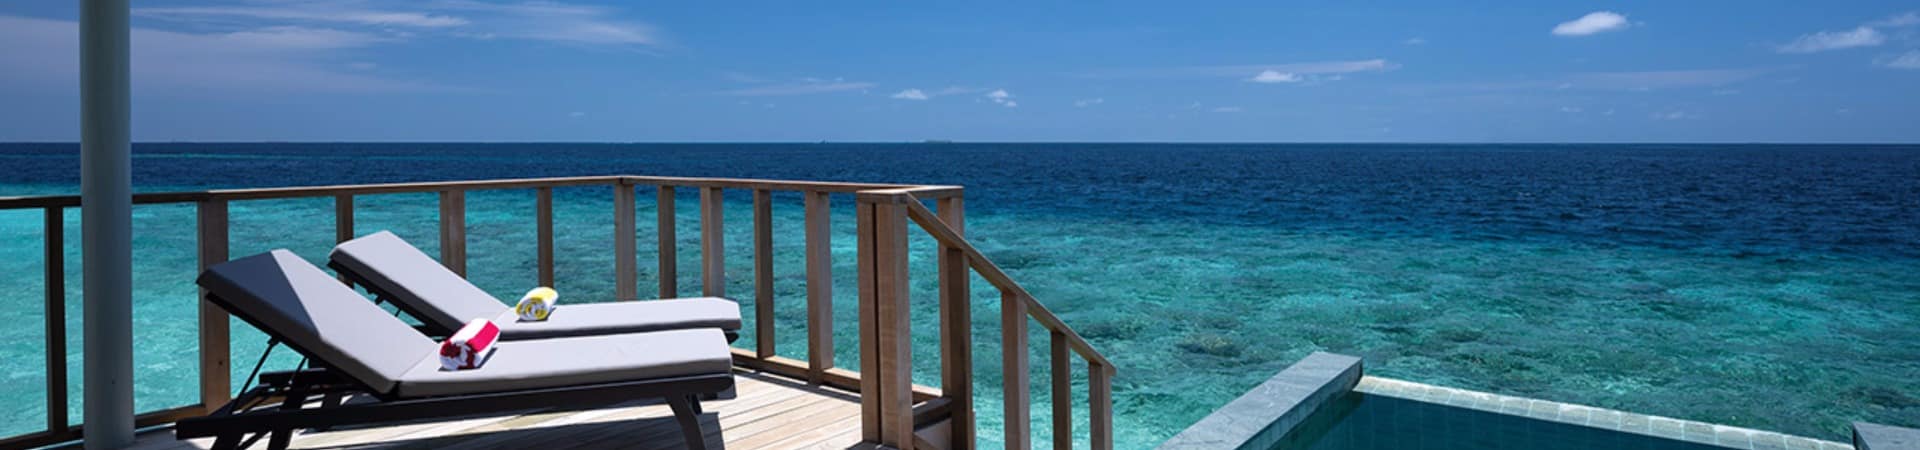 Oblu select lobigili deck sunnest water pool villa